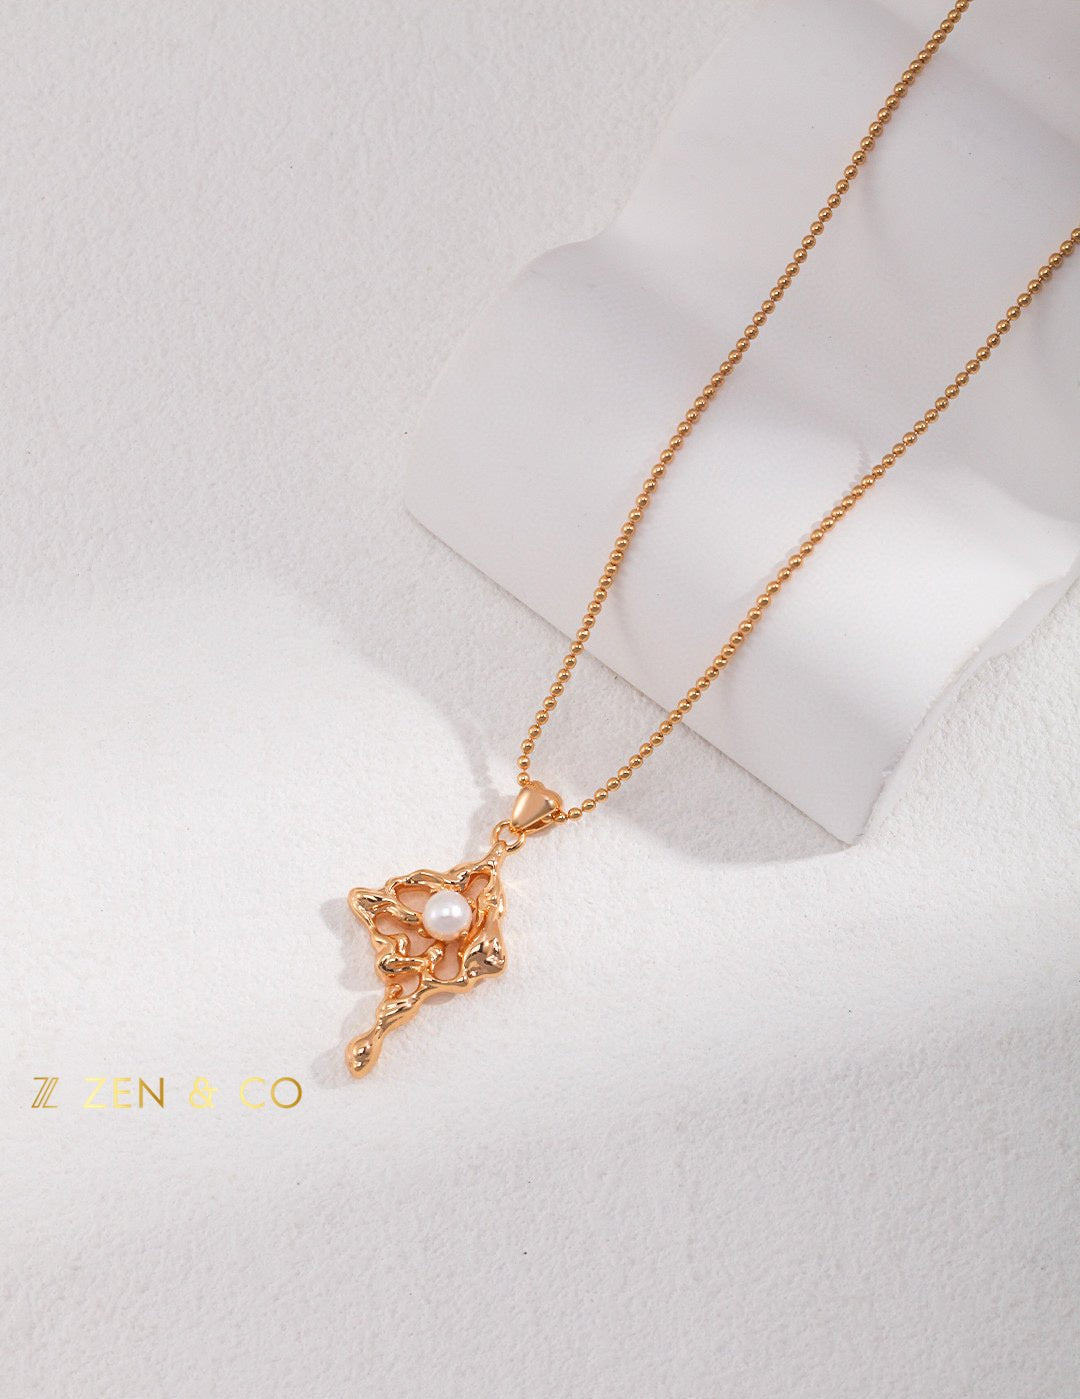 EDEN Cloud shaped pendant necklace - ZEN&CO Studio